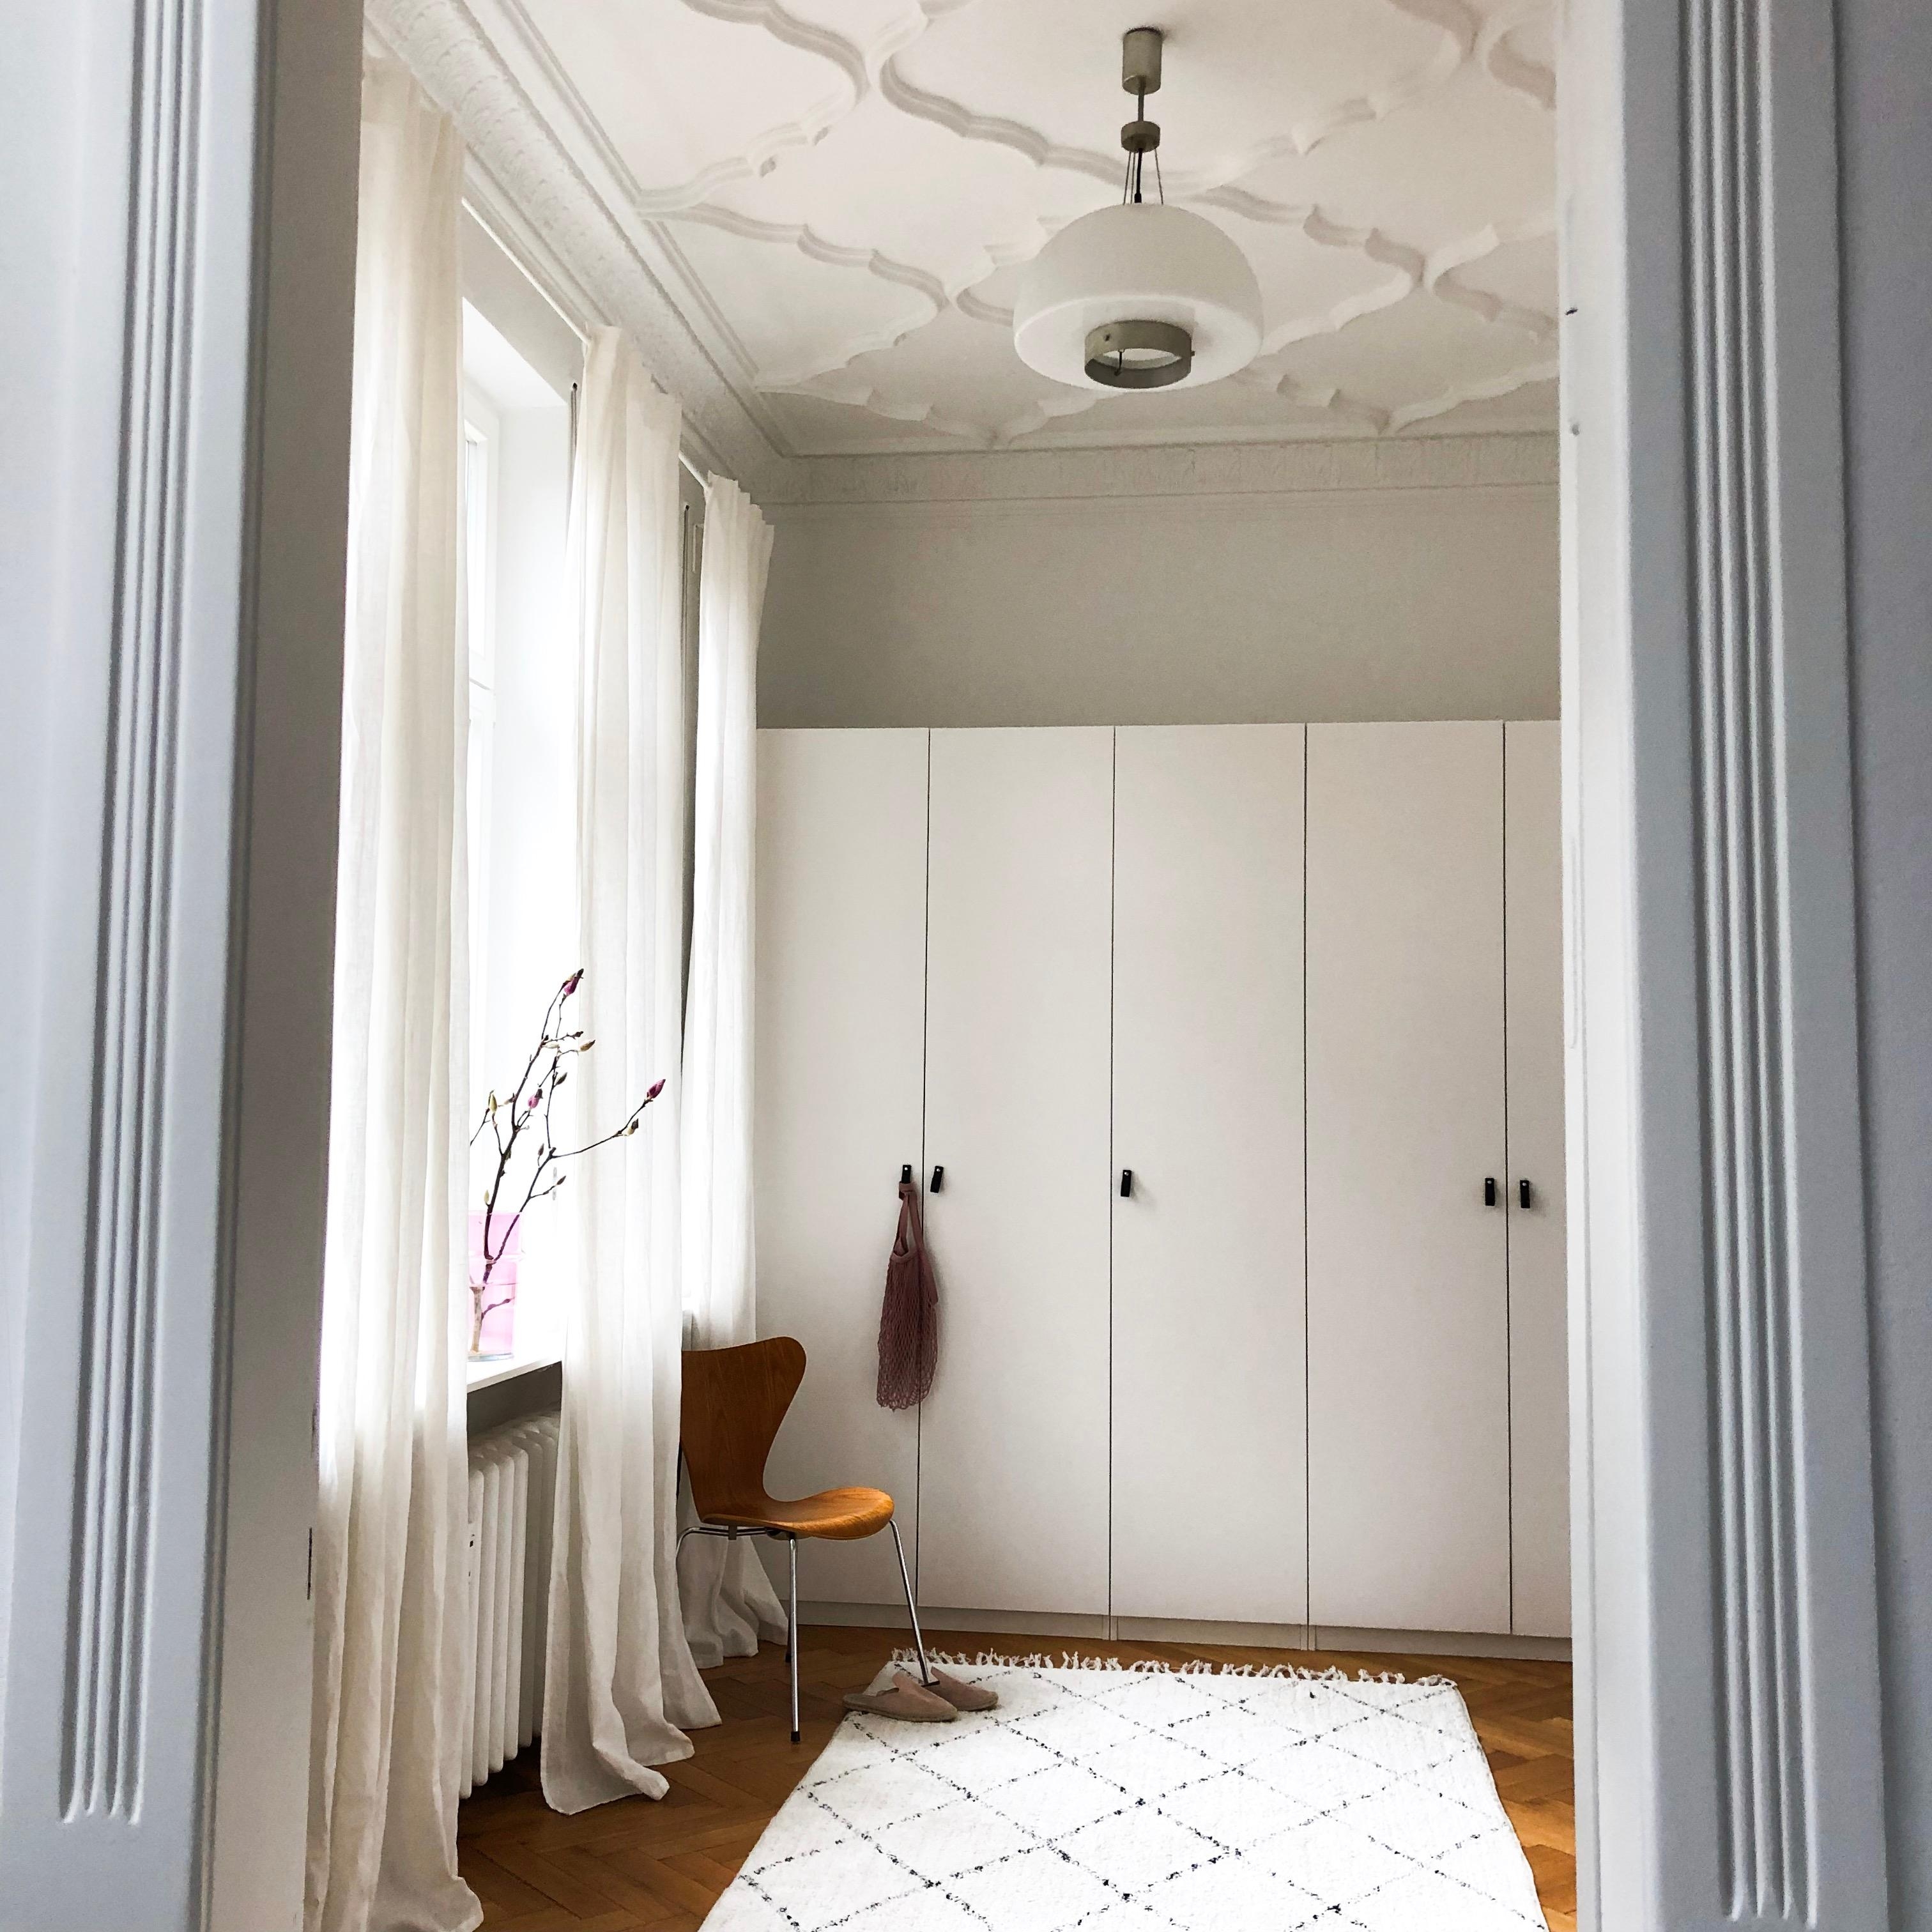 Das kleinste Zimmer in der Bude hat die schönste Decke und die Lieblingslampe vom Trödel🖤#kleinerraum #livingchallenge 